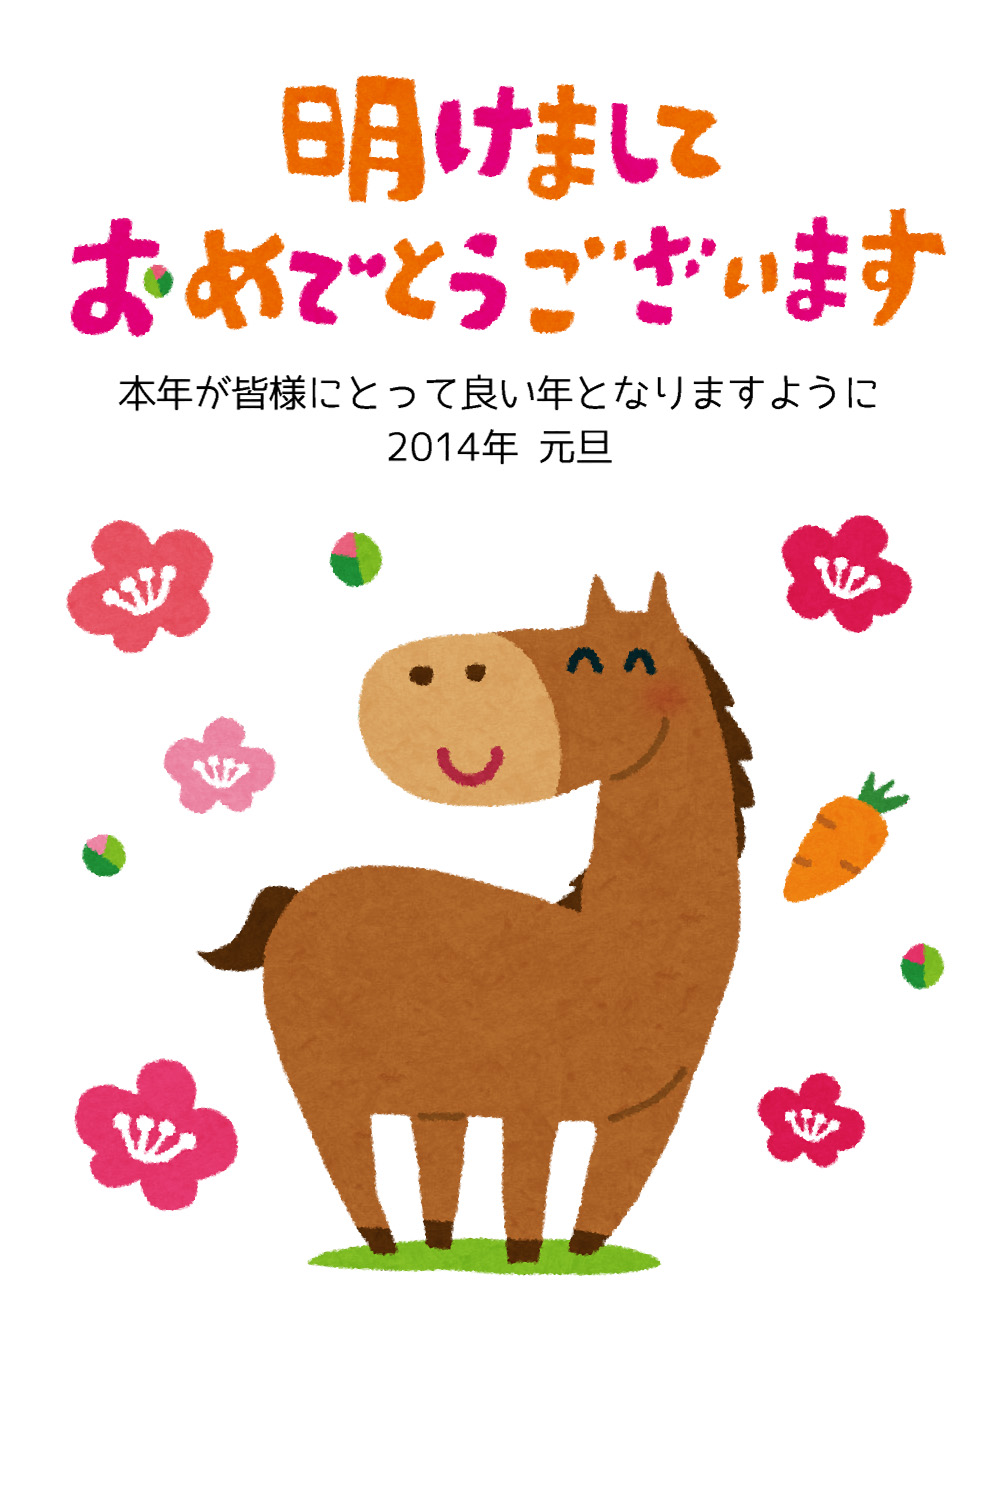 無料イラスト かわいいフリー素材集 年賀状のテンプレート 可愛い馬